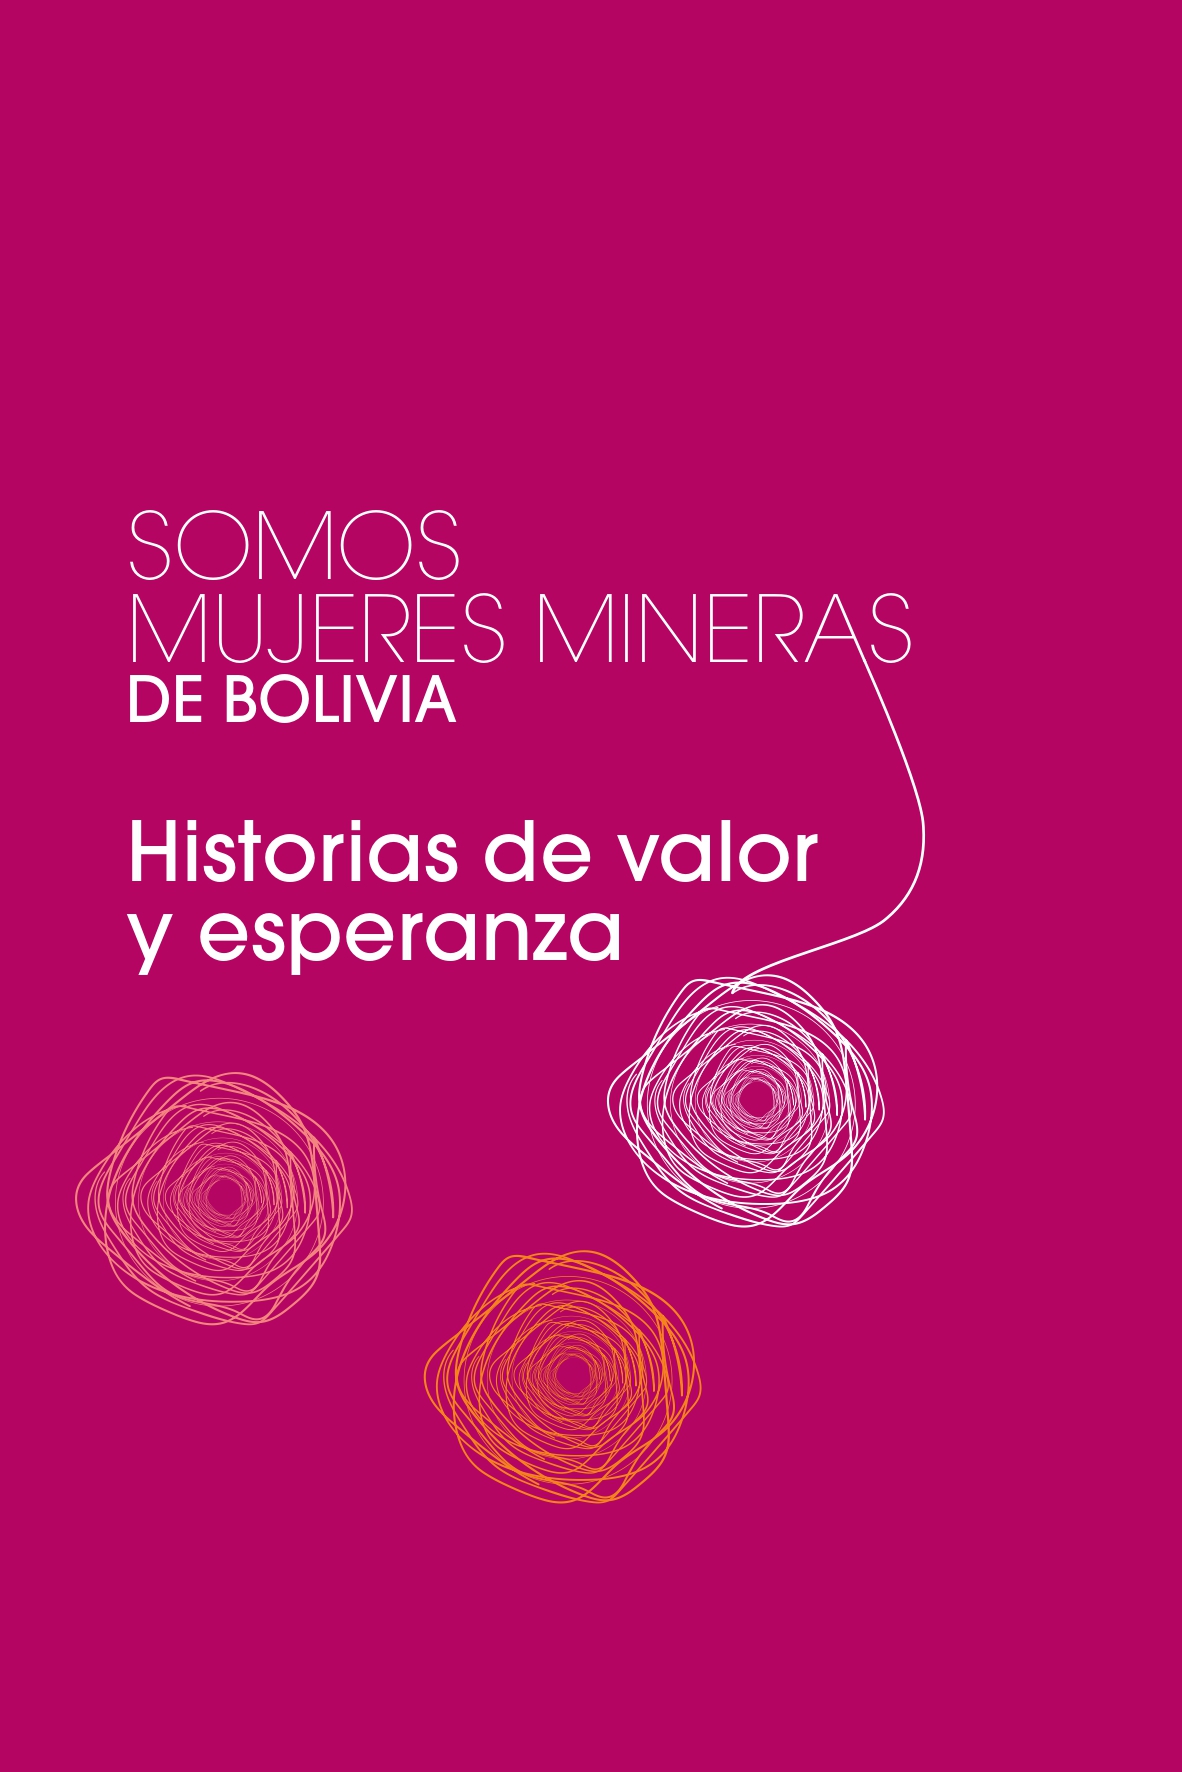 Somos mujeres mineras de Bolivia. Historias de valor y esperanza